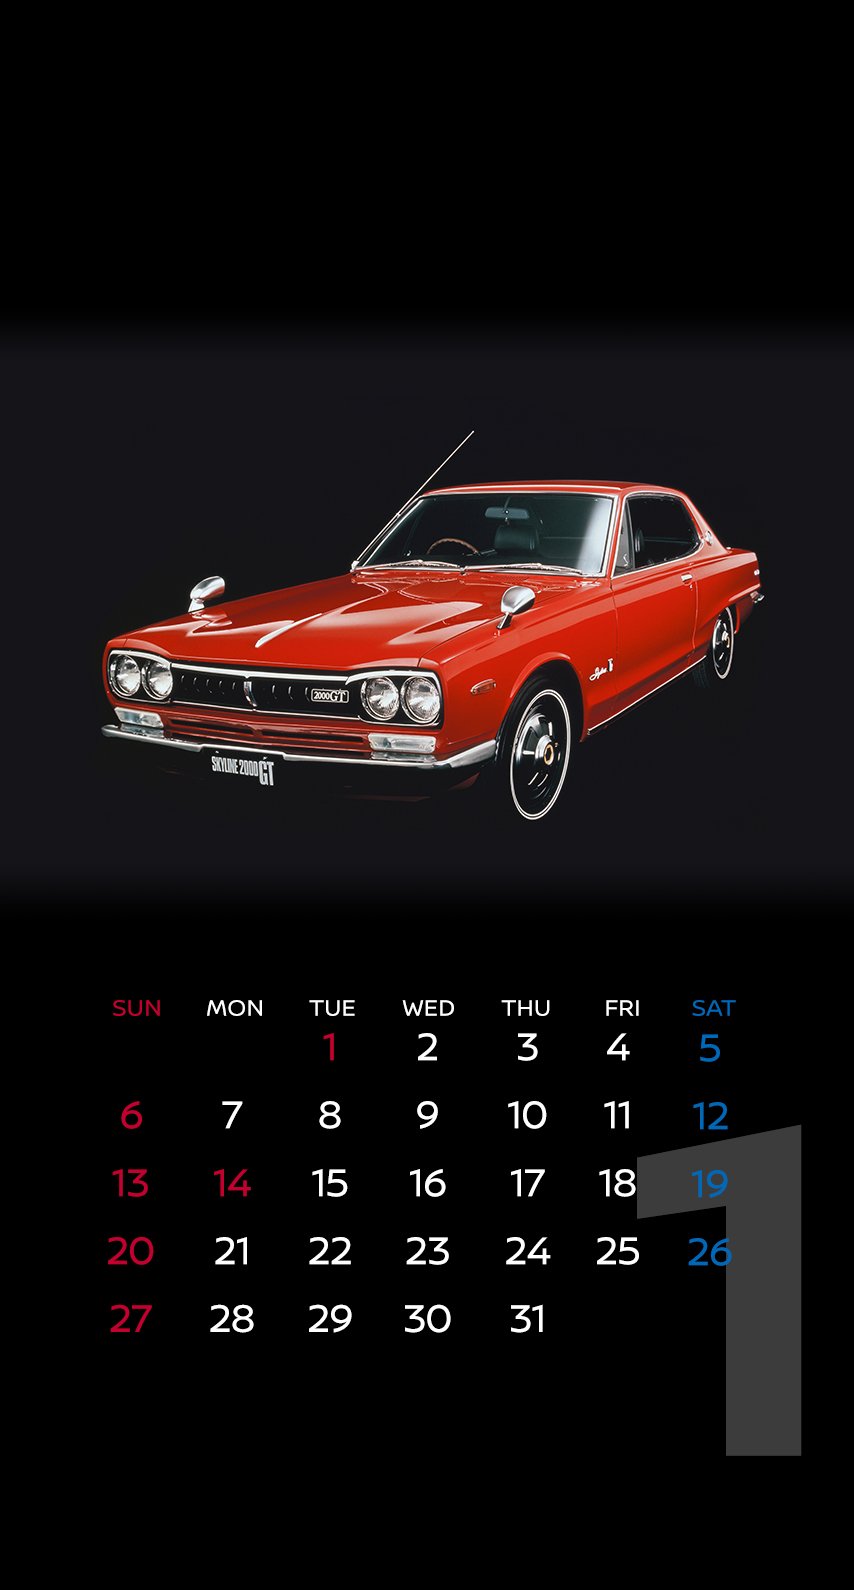 Twitter இல 日産自動車株式会社 壁紙カレンダー 19年1月は Nissangtr フェアレディz Z32型 スカイライン C10型 の3車種 T Co T0auwkwmop 皆さんにとって19年も素晴らしい年になるよう願っております １年間お世話になりました